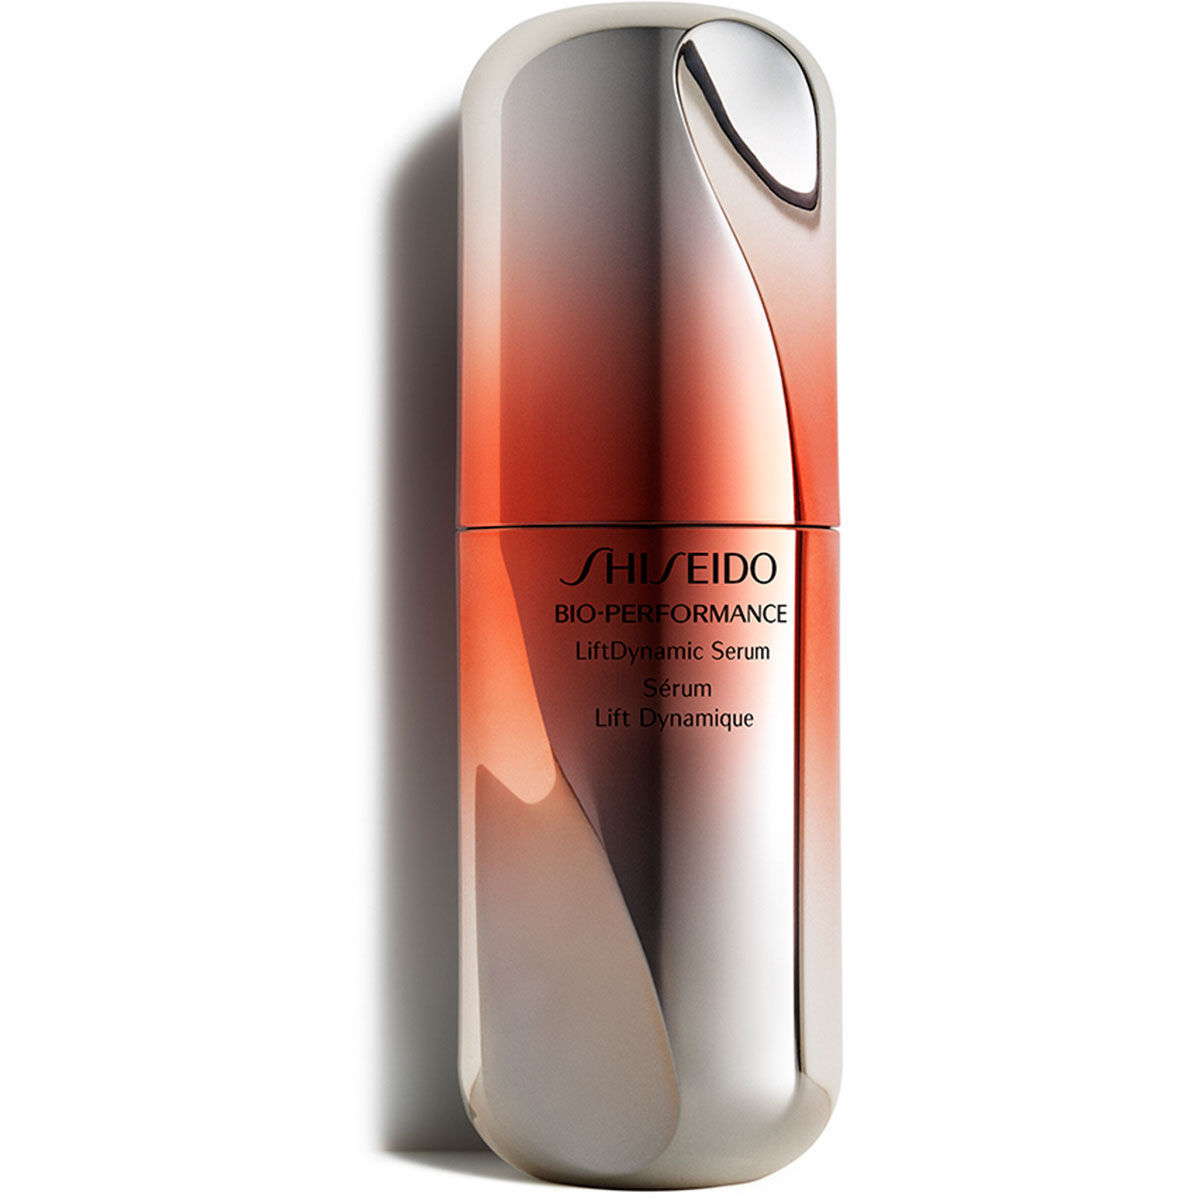 Shiseido Bio Performance LiftDynamic Serum 30 ml - $243.00